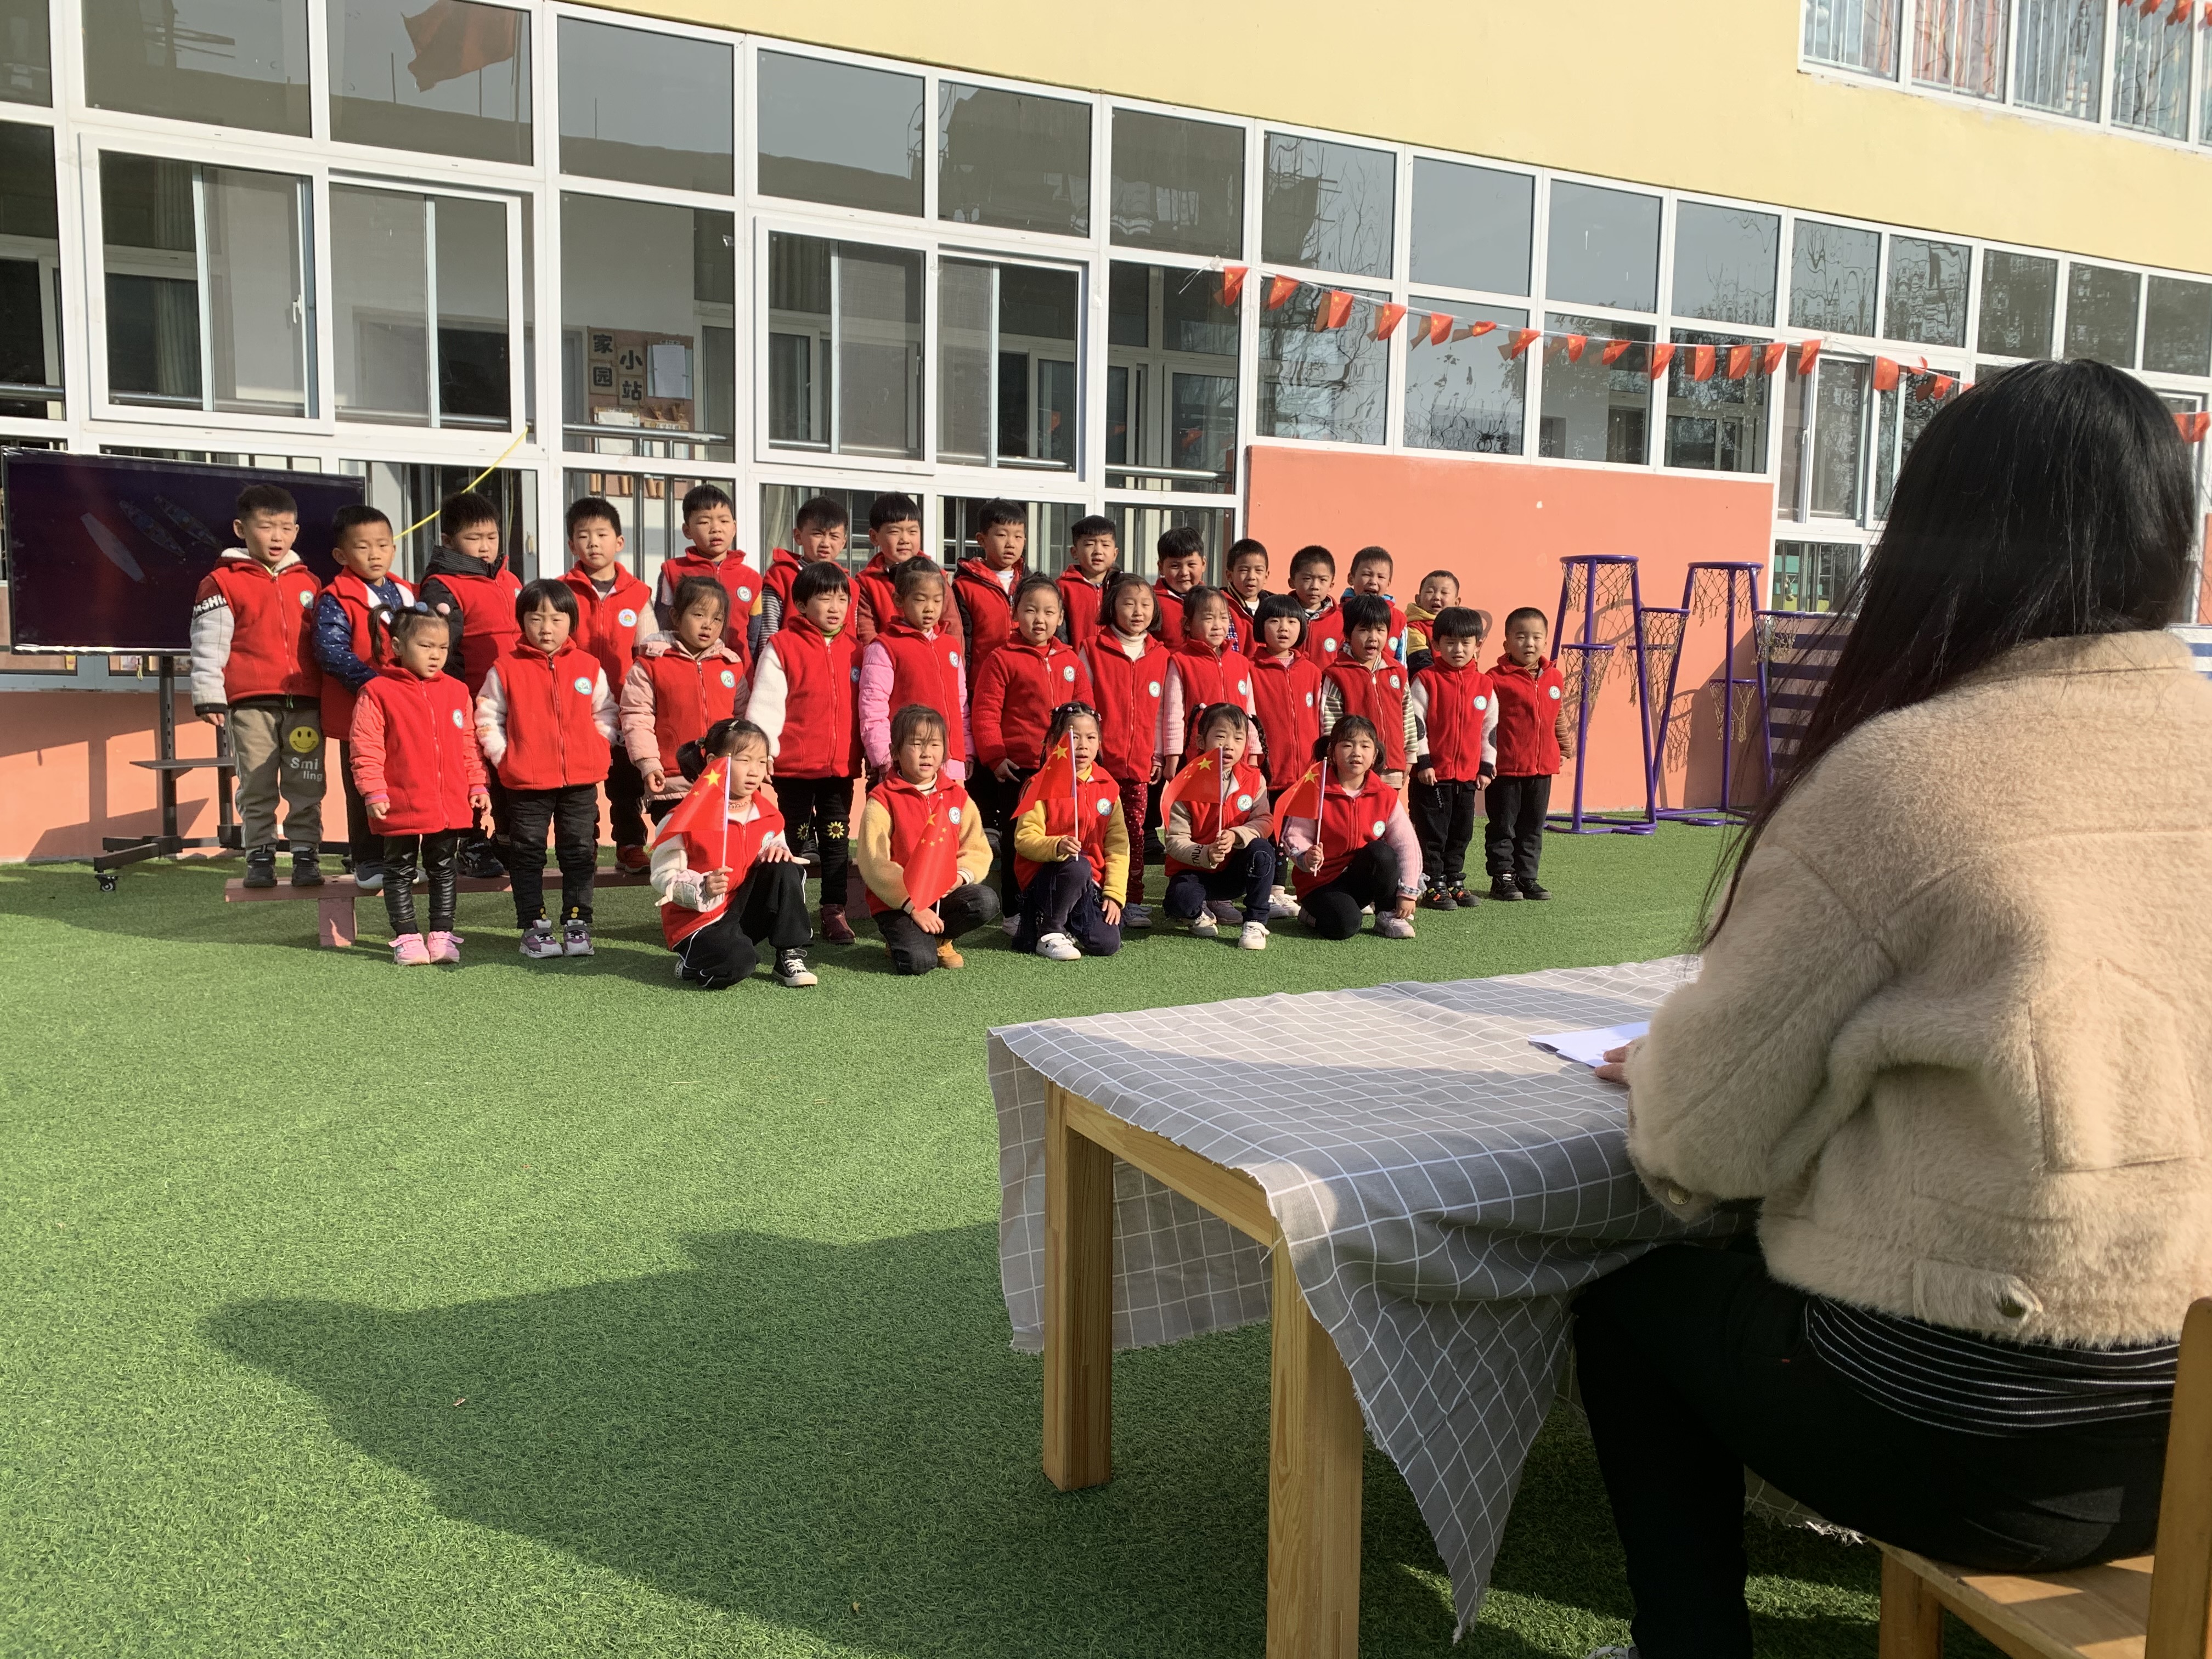 童心向党 歌唱祖国——合沟镇中心幼儿园举行红歌大合唱比赛